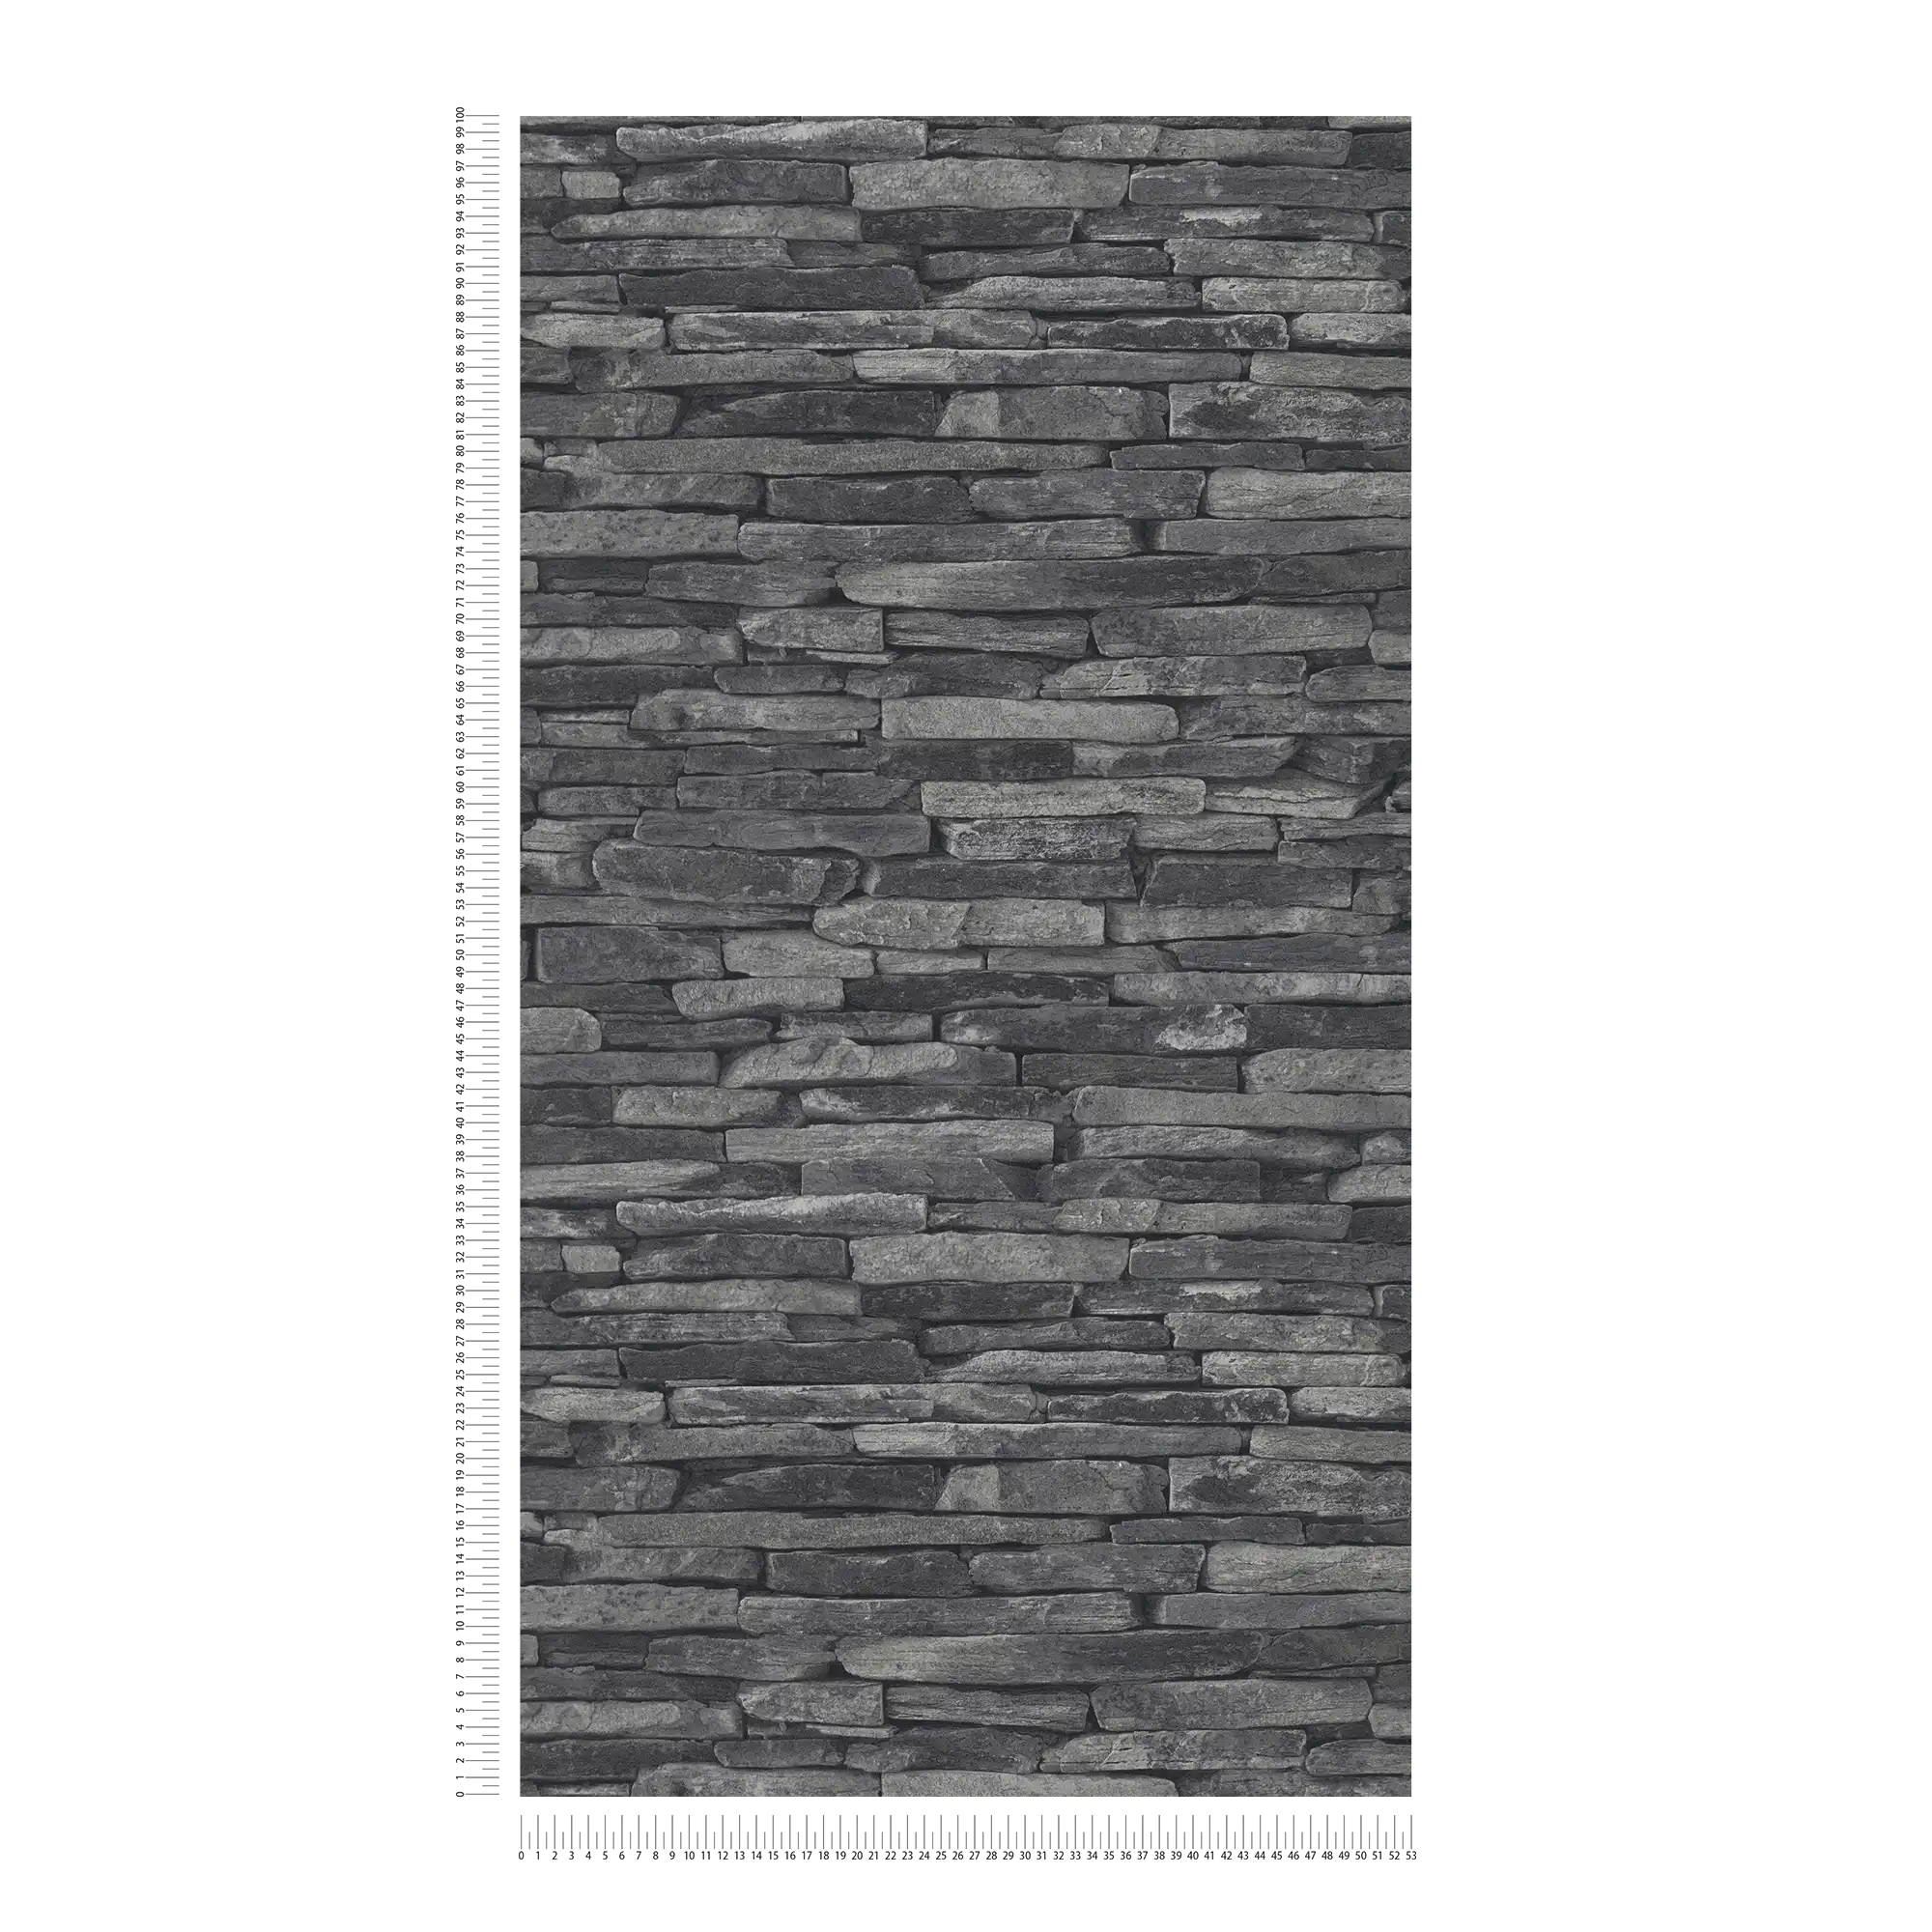             Carta da parati con effetto pietra, pietre naturali scure ed effetto 3D - grigio, nero
        